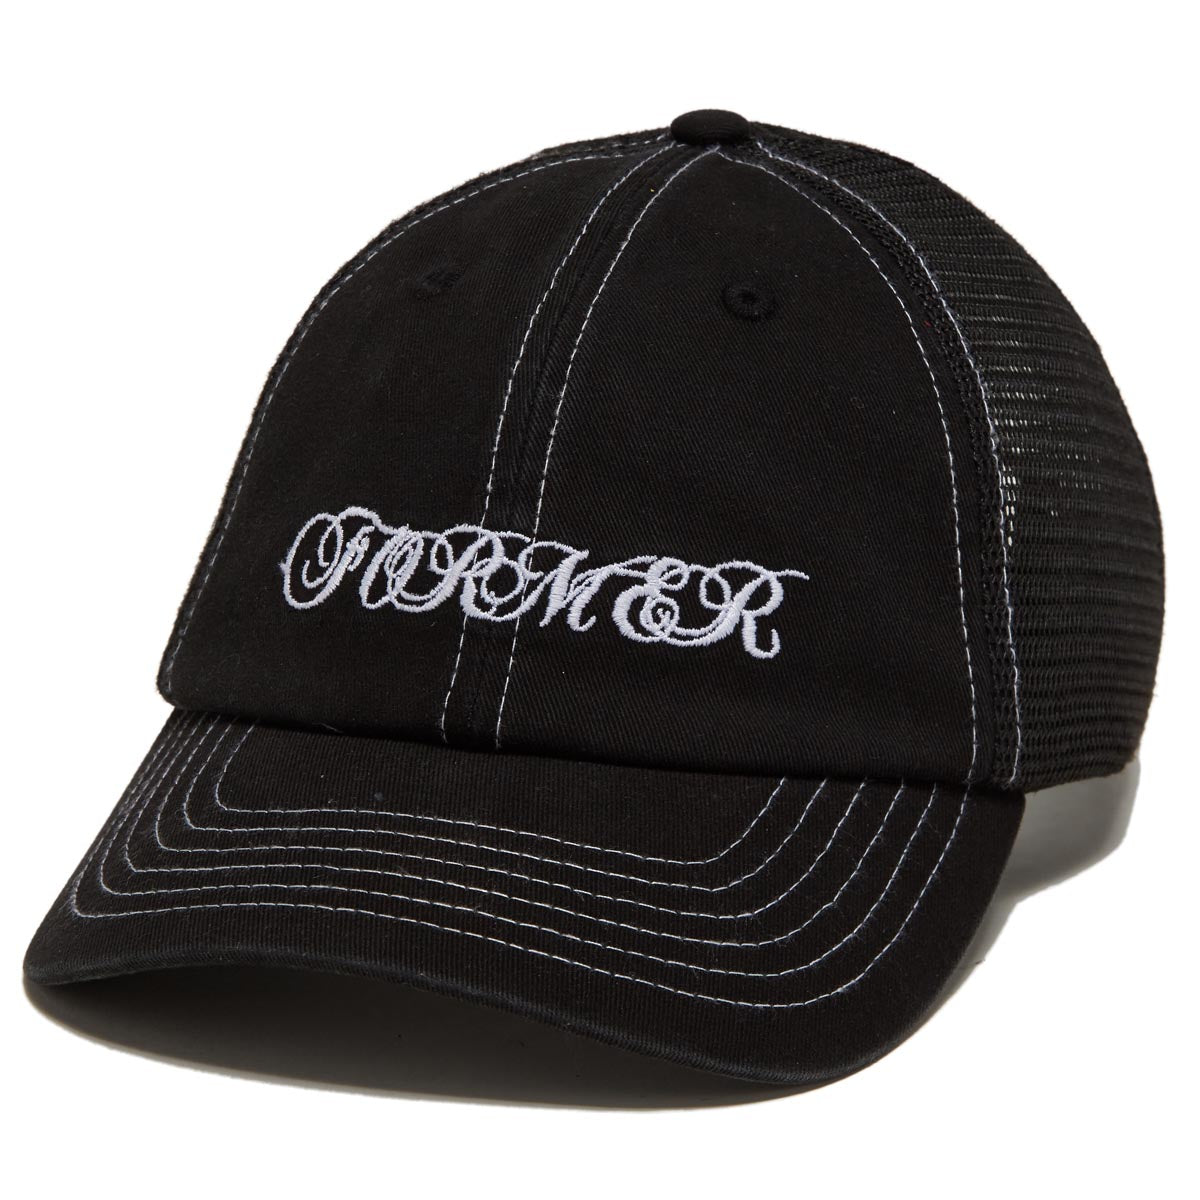 Former Wire Trucker Hat - Black image 1